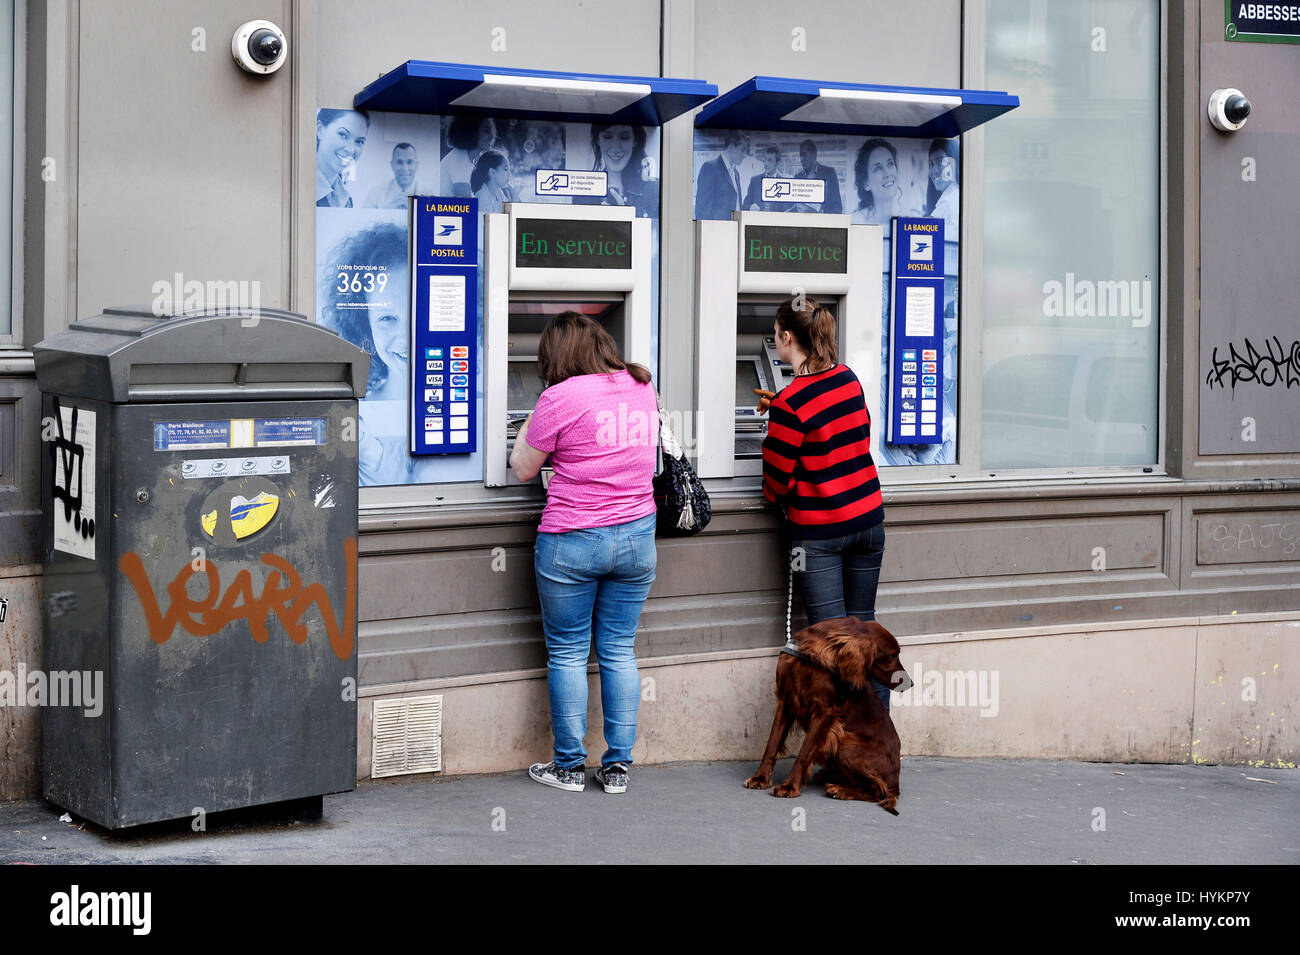 ATM Machine, Post Office, Montmartre, Paris, France Stock Photo